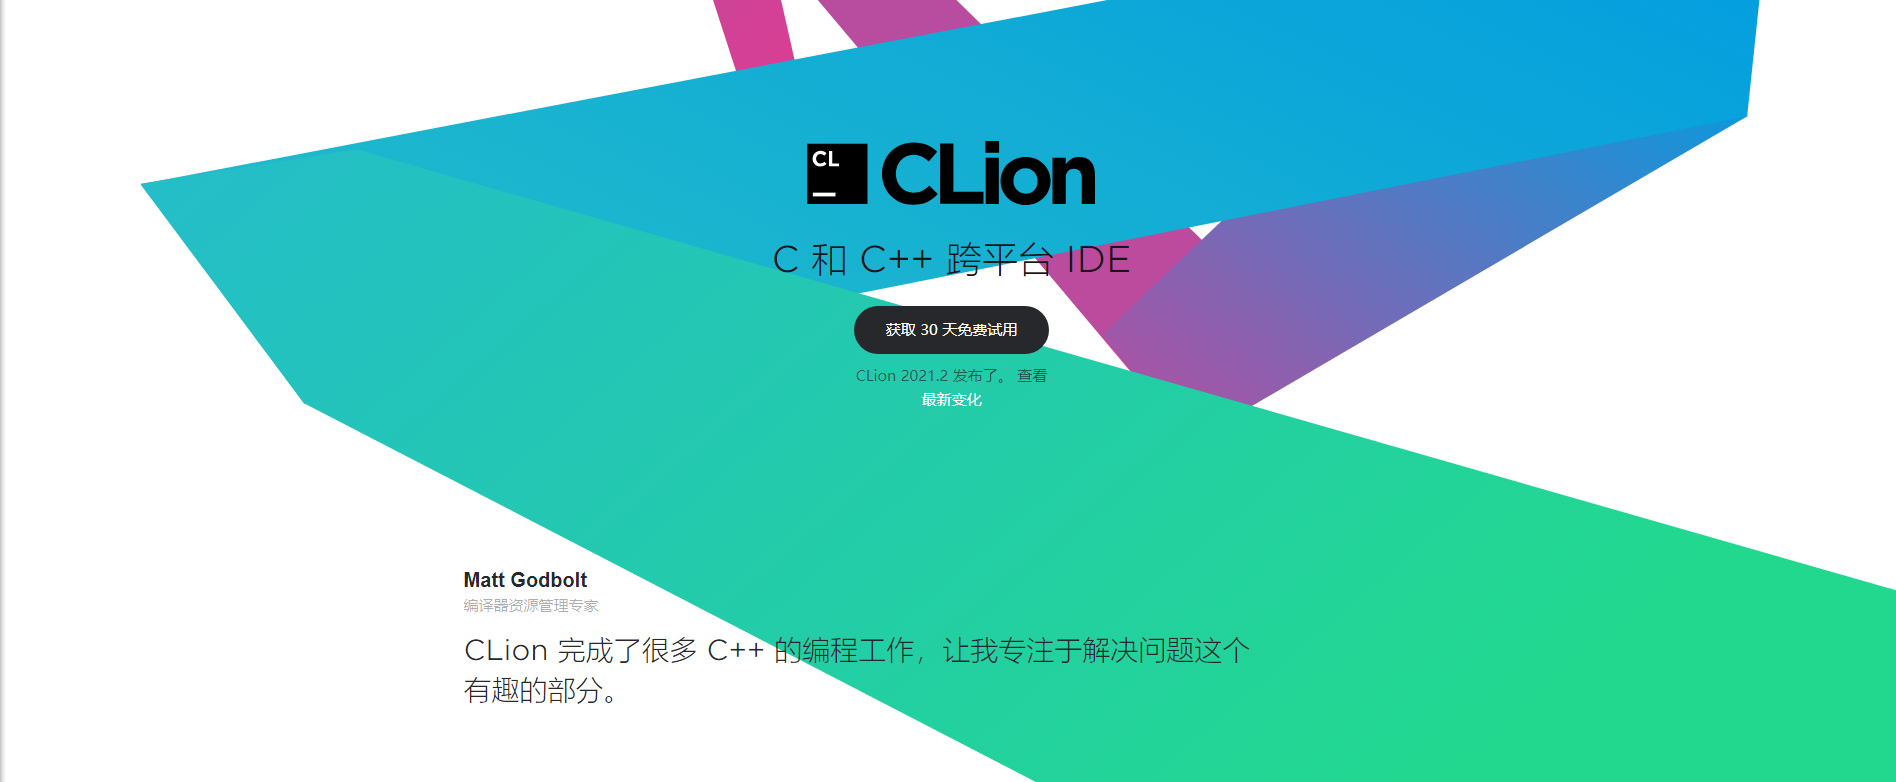 【软件仓库】JetBrains CLion 2021.2.3 C/C++ 跨平台集成开发环境免费版-南逸博客